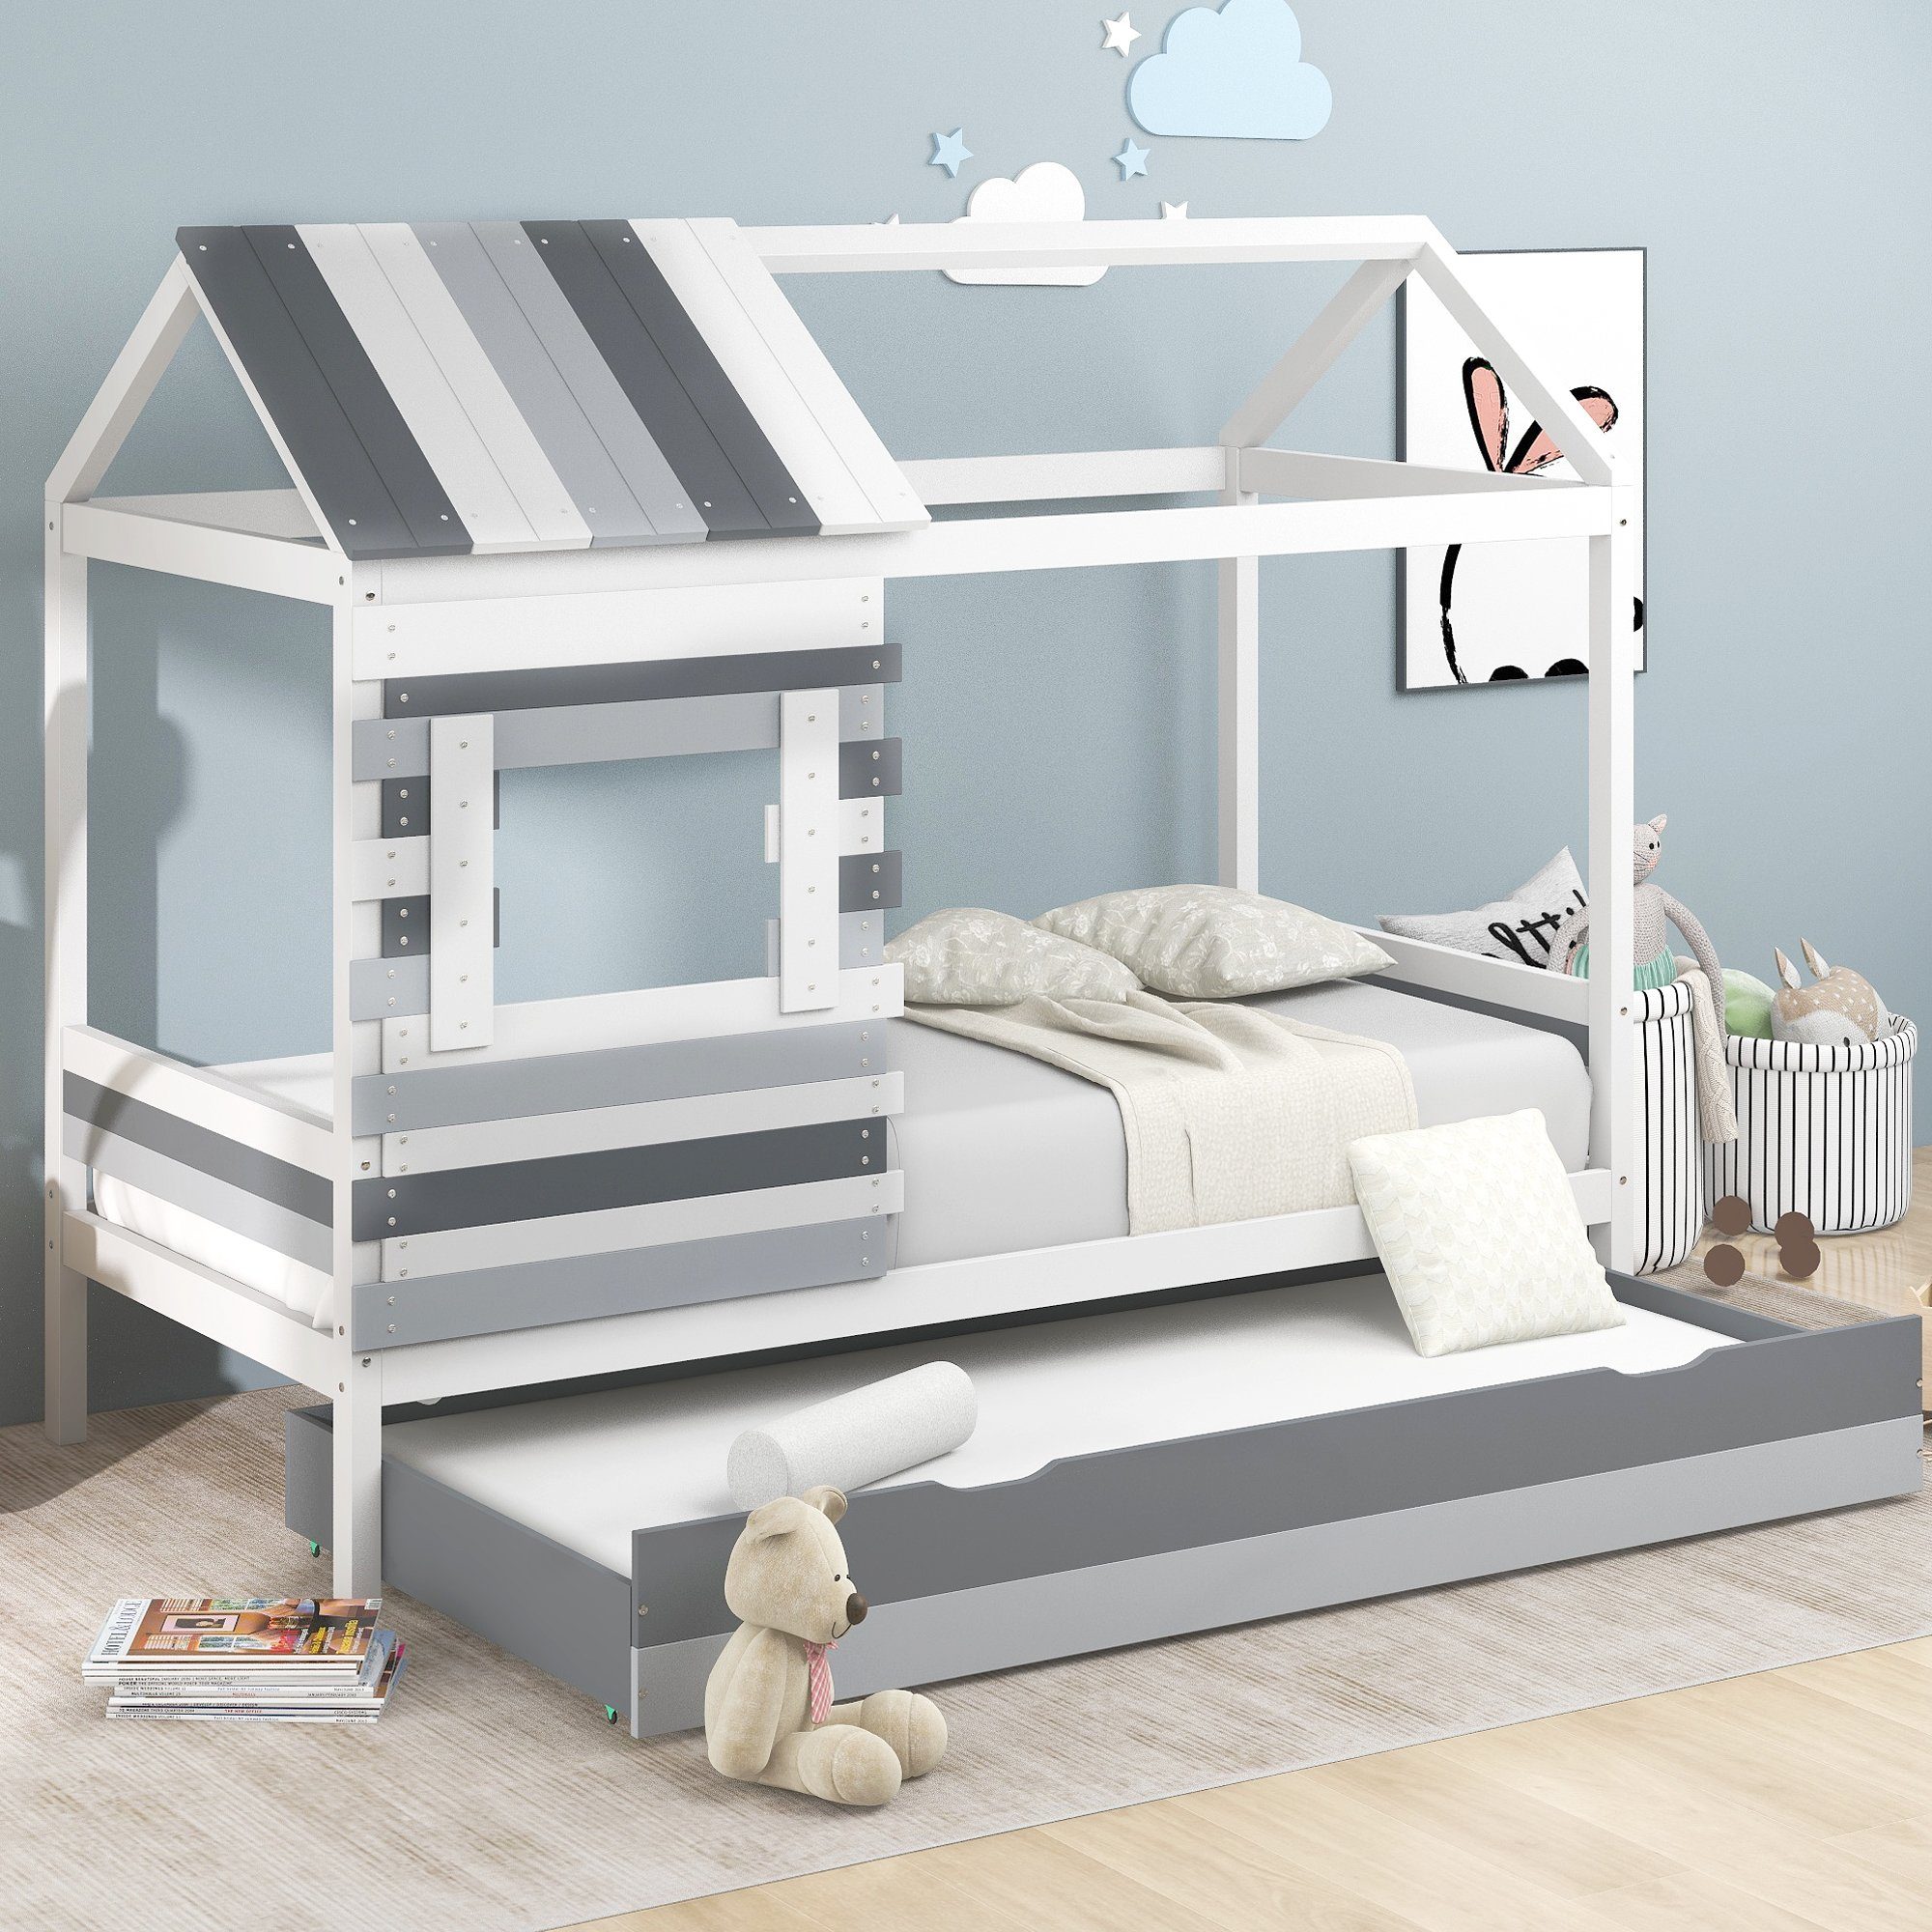 Fangqi Bett 90x200 cm 2 in 1 Kinder Etagenbett, Holzbett mit Klappbett und  Dach